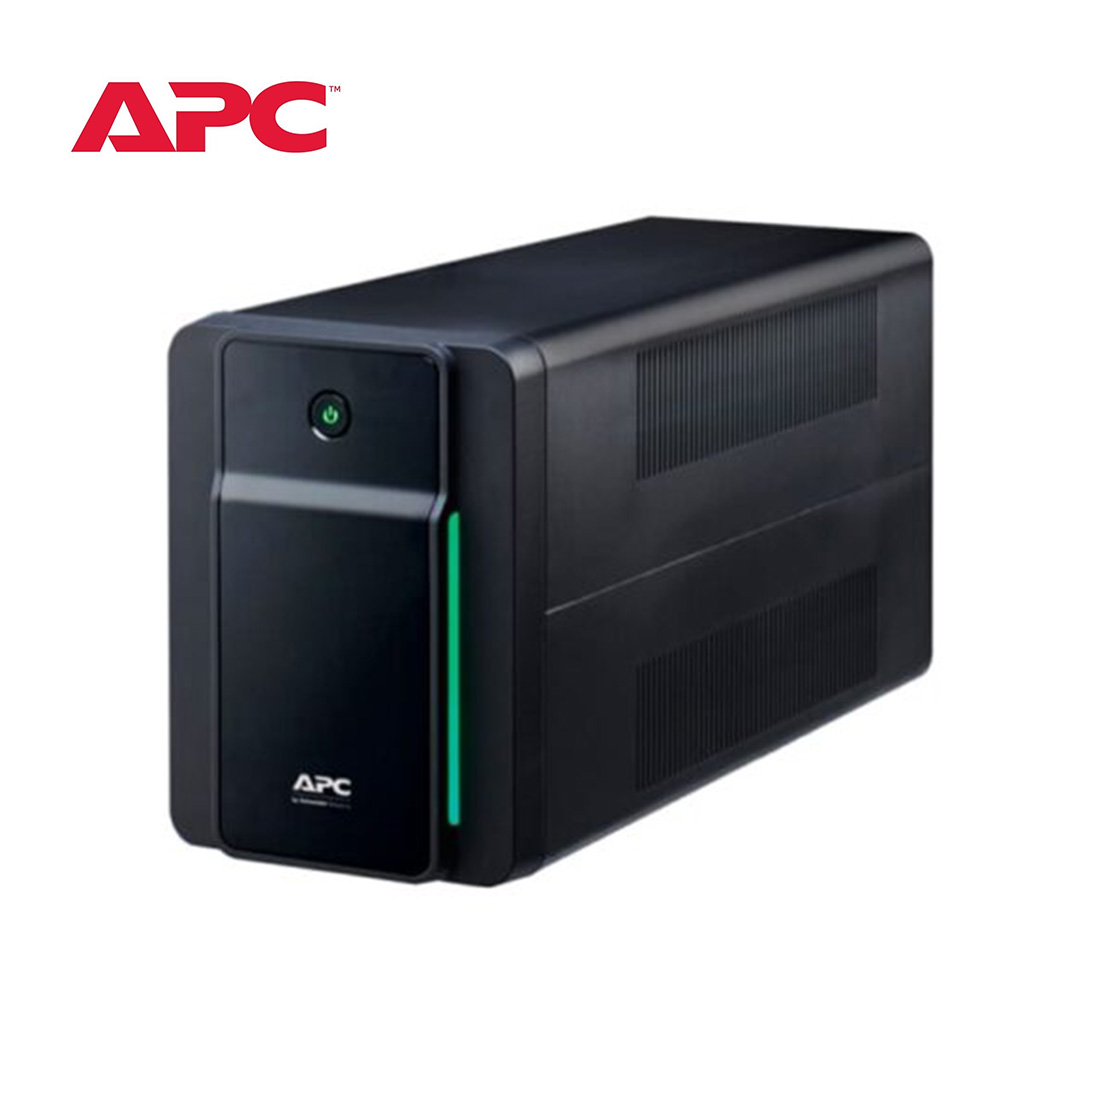 APC-Back-UPS-1600VA-230V-AVR-Universal-Sockets